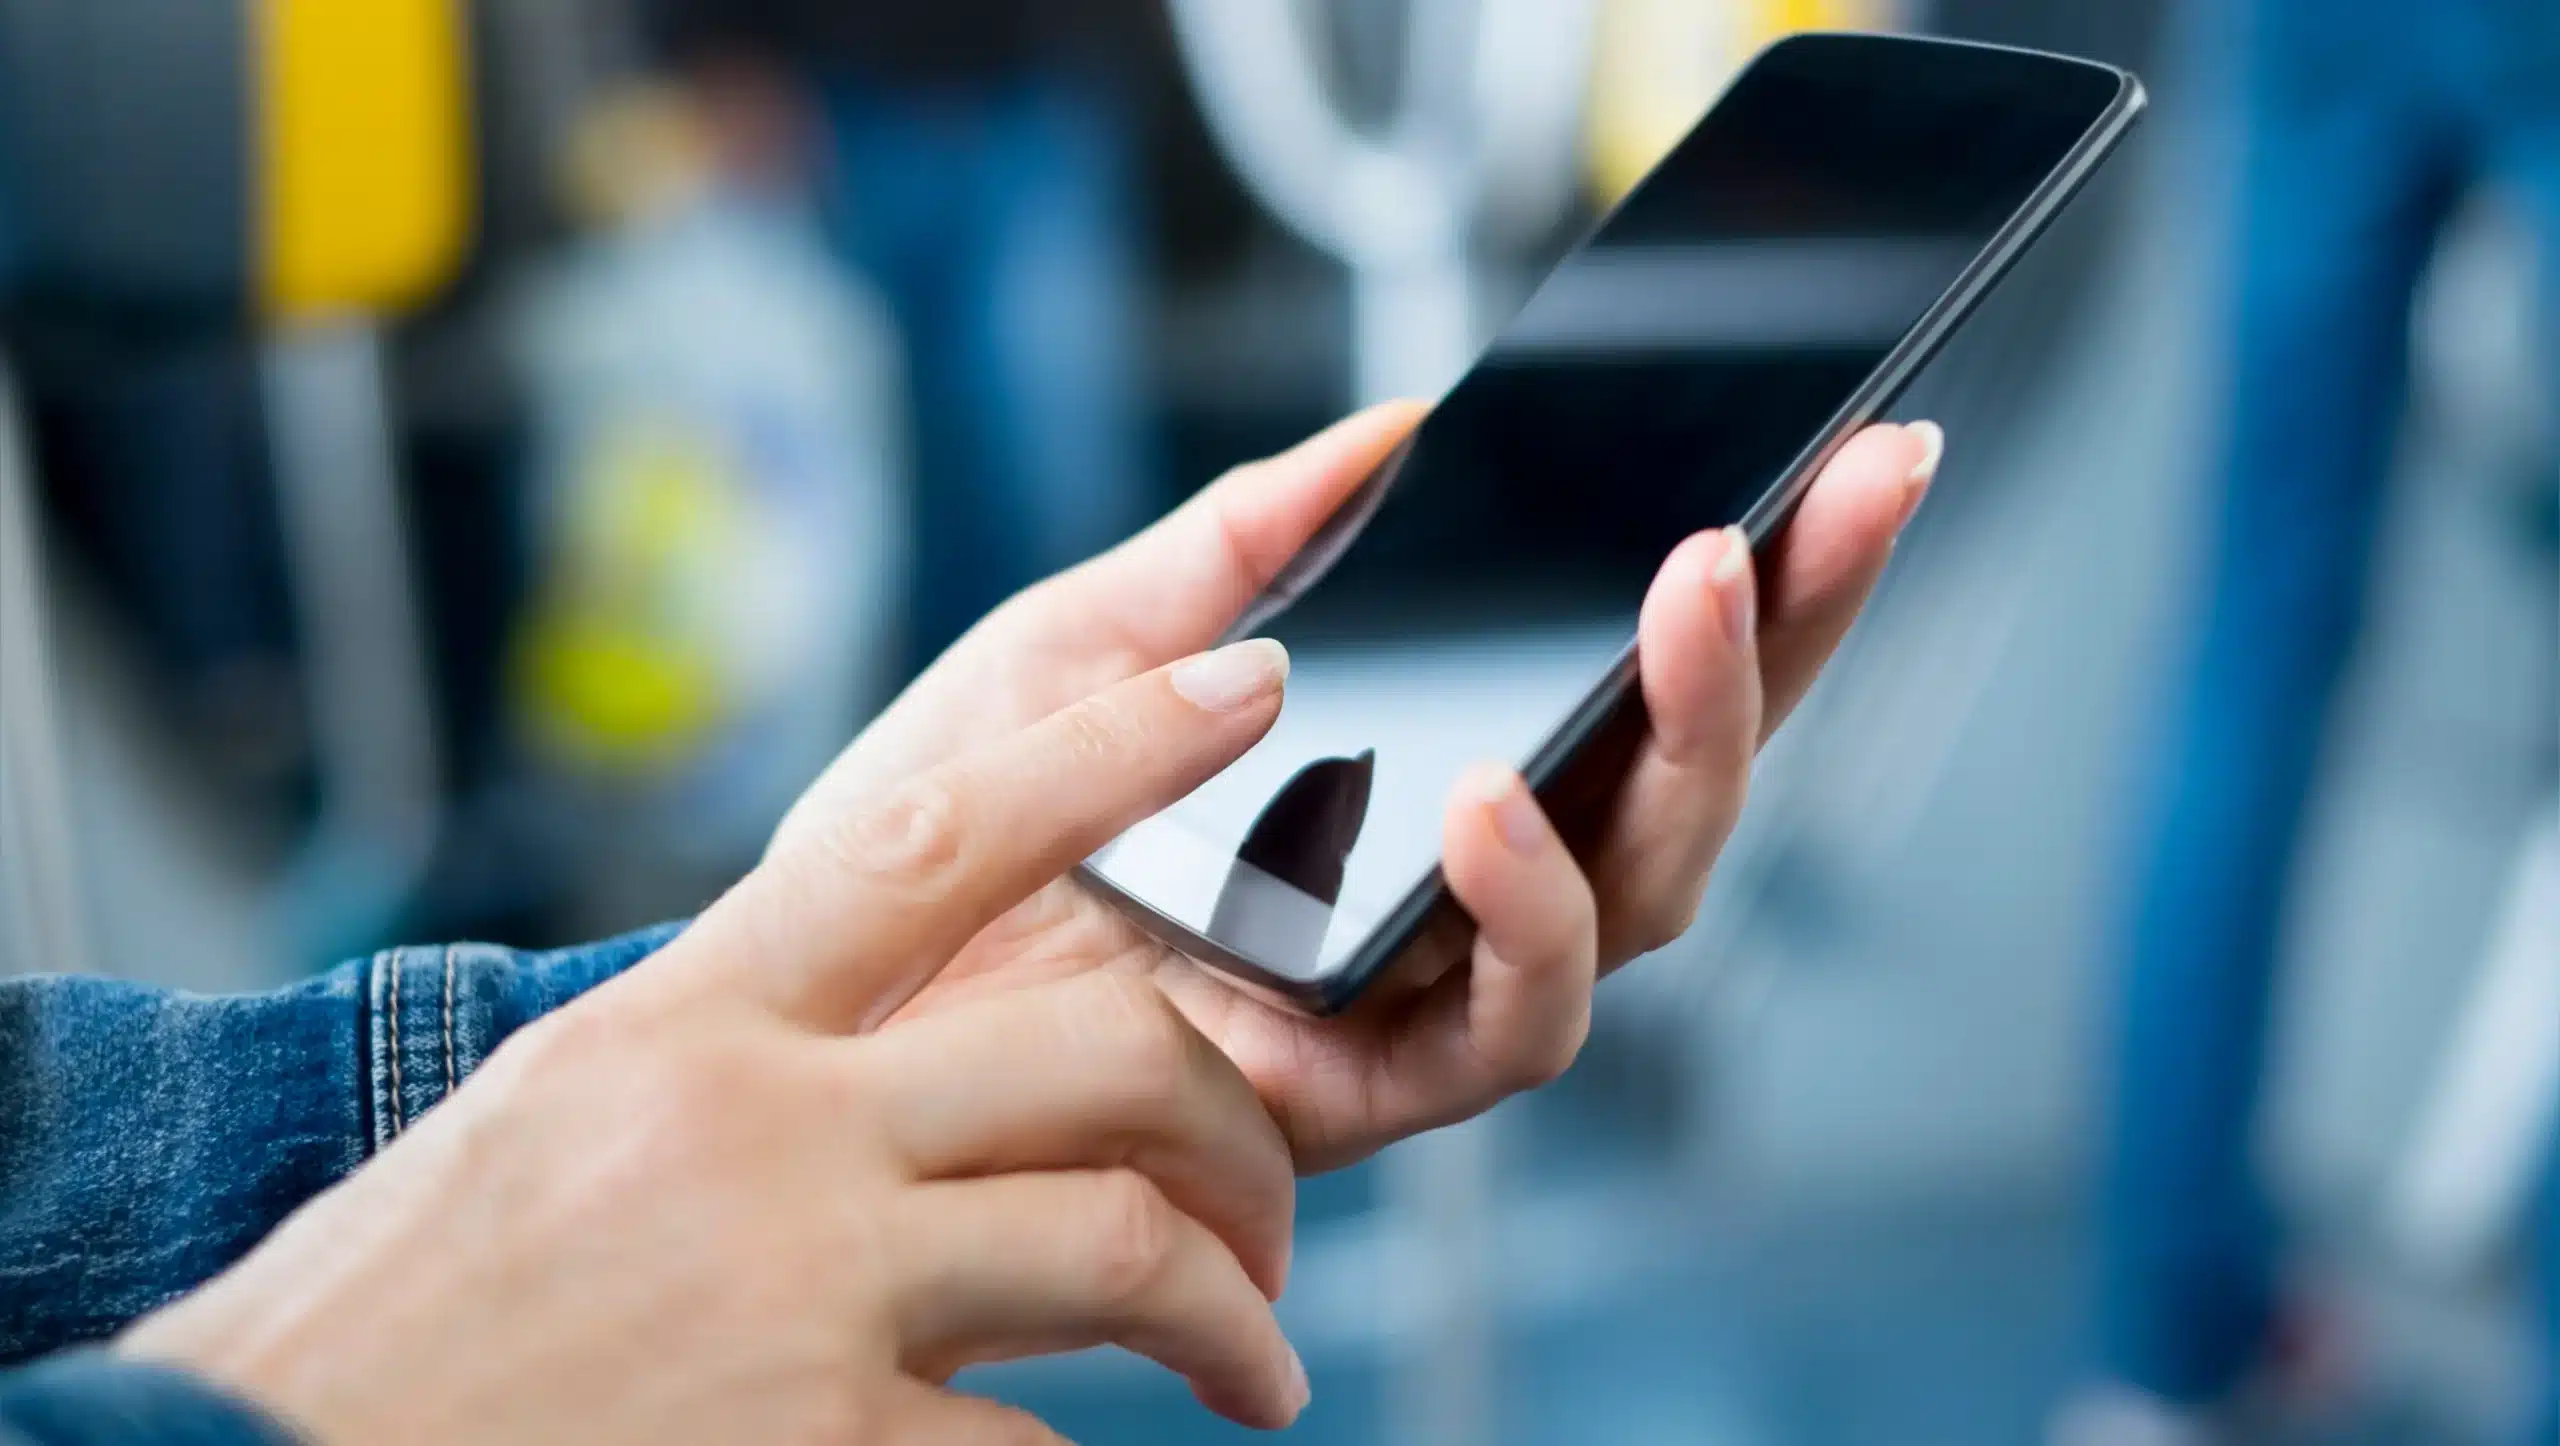 Smartphones Incriveis por Menos de 2.000 Reais Descubra as Melhores Ofertas scaled